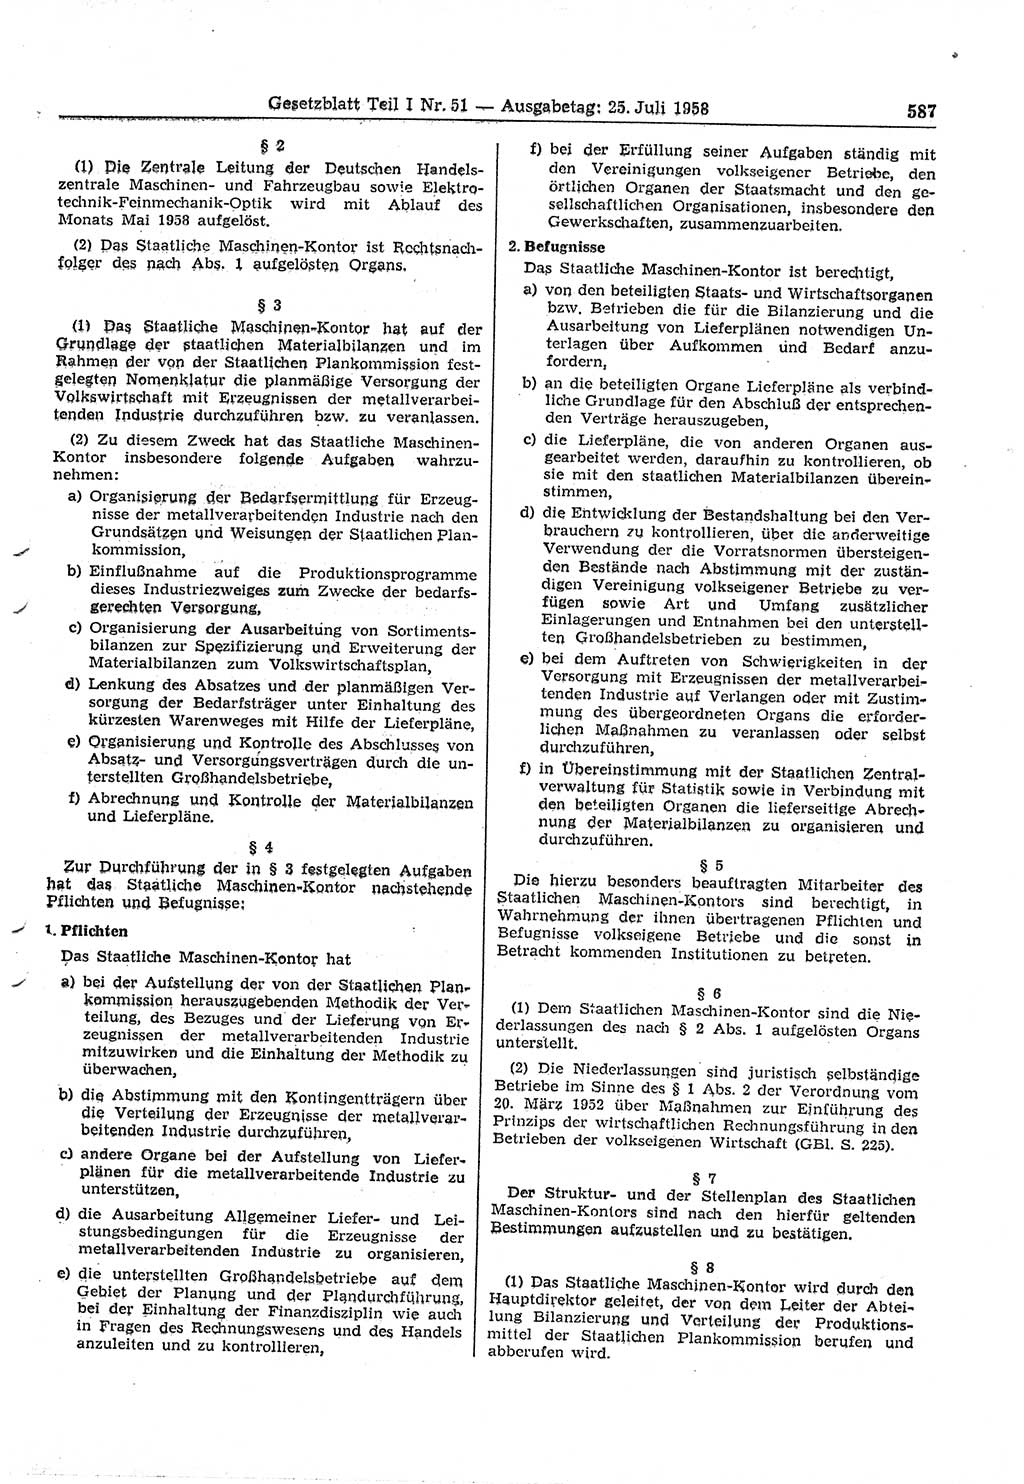 Gesetzblatt (GBl.) der Deutschen Demokratischen Republik (DDR) Teil Ⅰ 1958, Seite 587 (GBl. DDR Ⅰ 1958, S. 587)